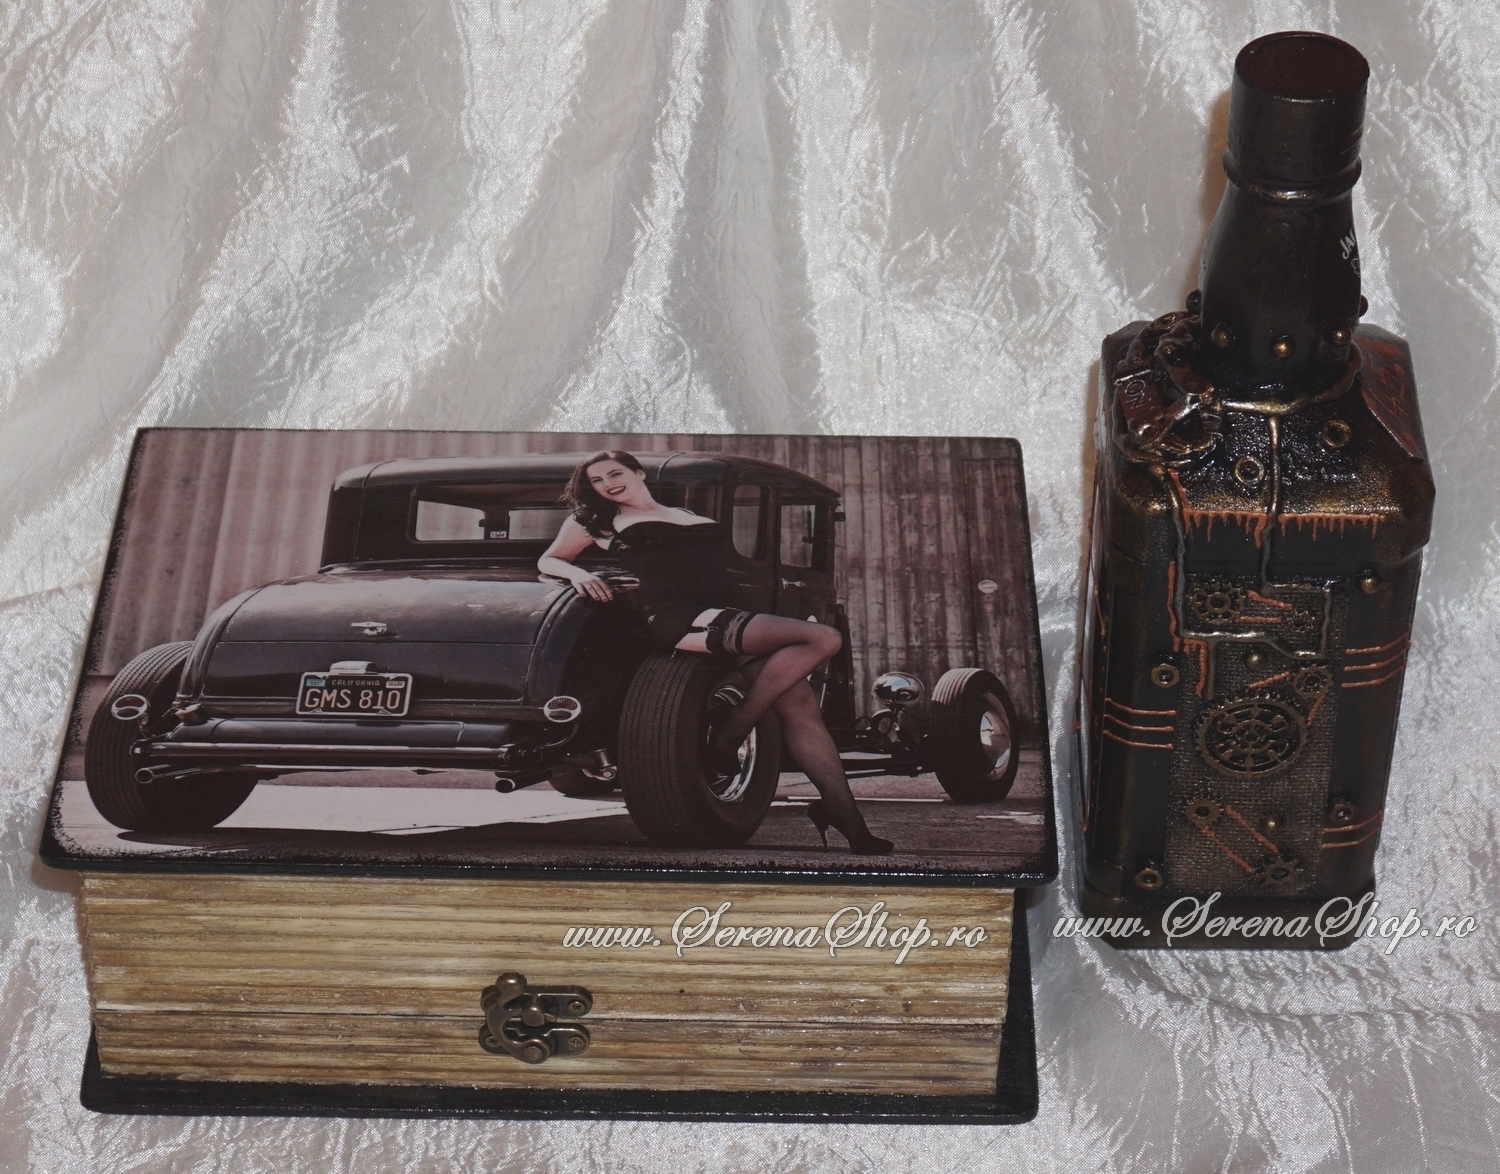 Sticla cu wiskey Jack Daniel's si cutie personalizate, decorate manual